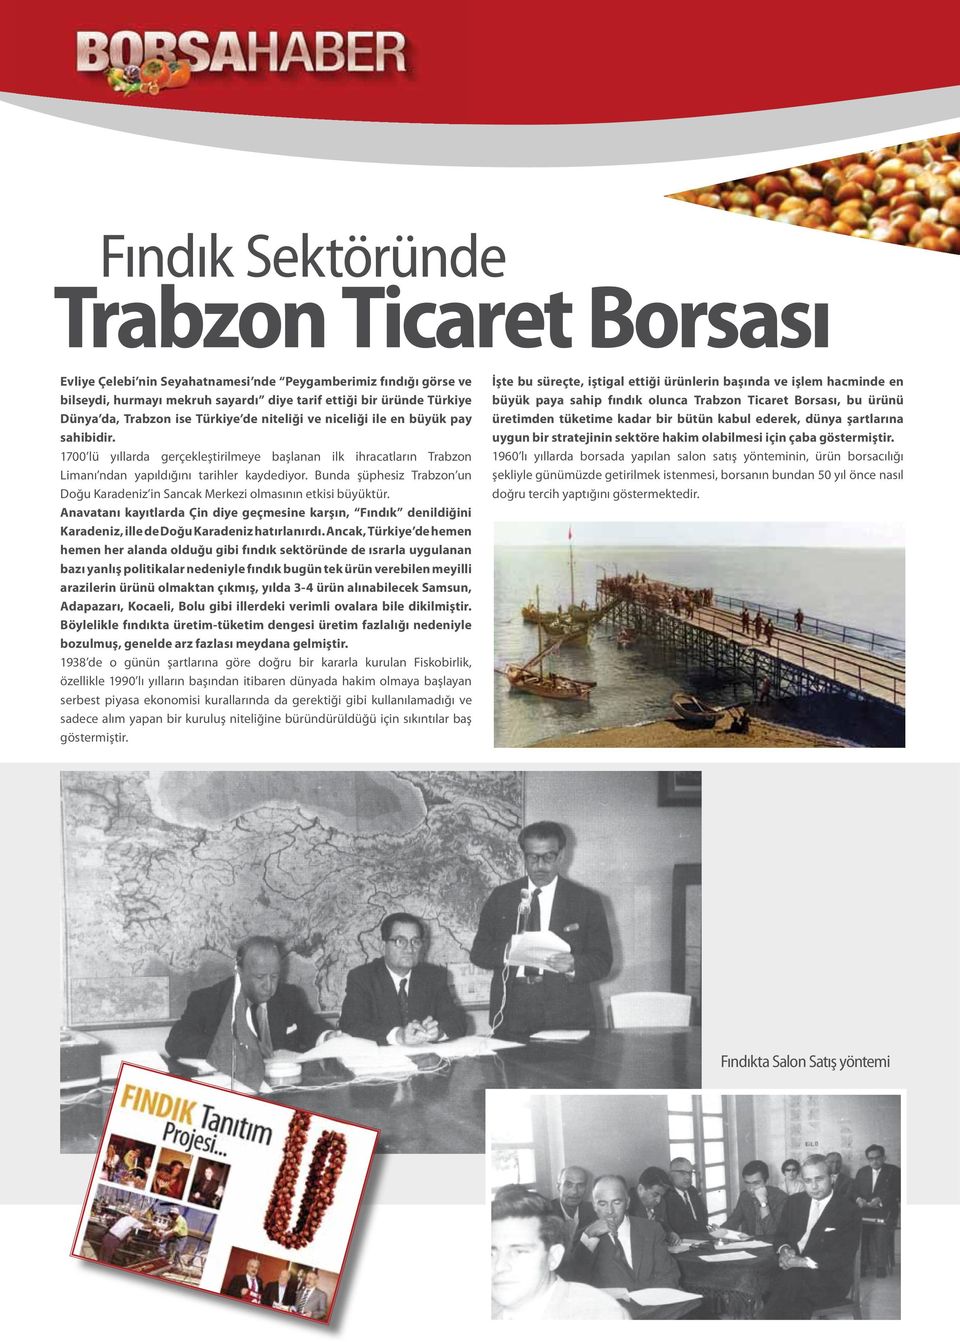 Bunda şüphesiz Trabzon un Doğu Karadeniz in Sancak Merkezi olmasının etkisi büyüktür. Anavatanı kayıtlarda Çin diye geçmesine karşın, Fındık denildiğini Karadeniz, ille de Doğu Karadeniz hatırlanırdı.